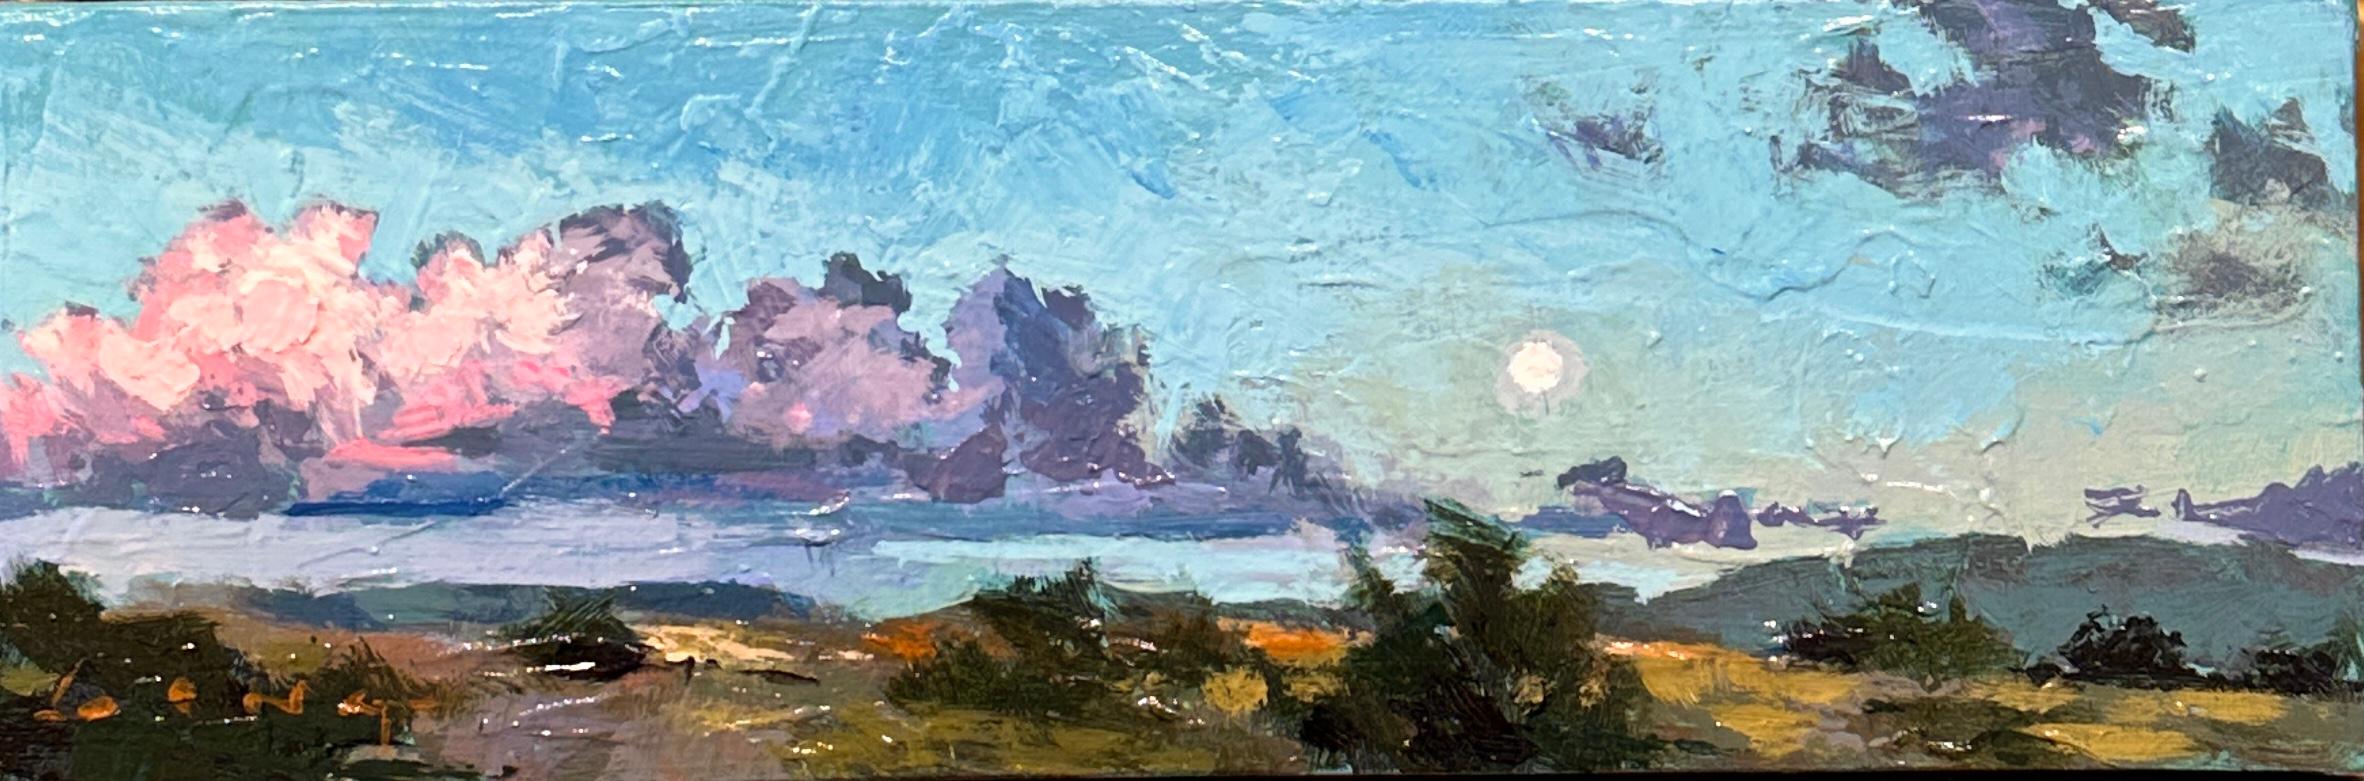 Chris Long Landscape Painting - Moonscape Sedona, Landscape